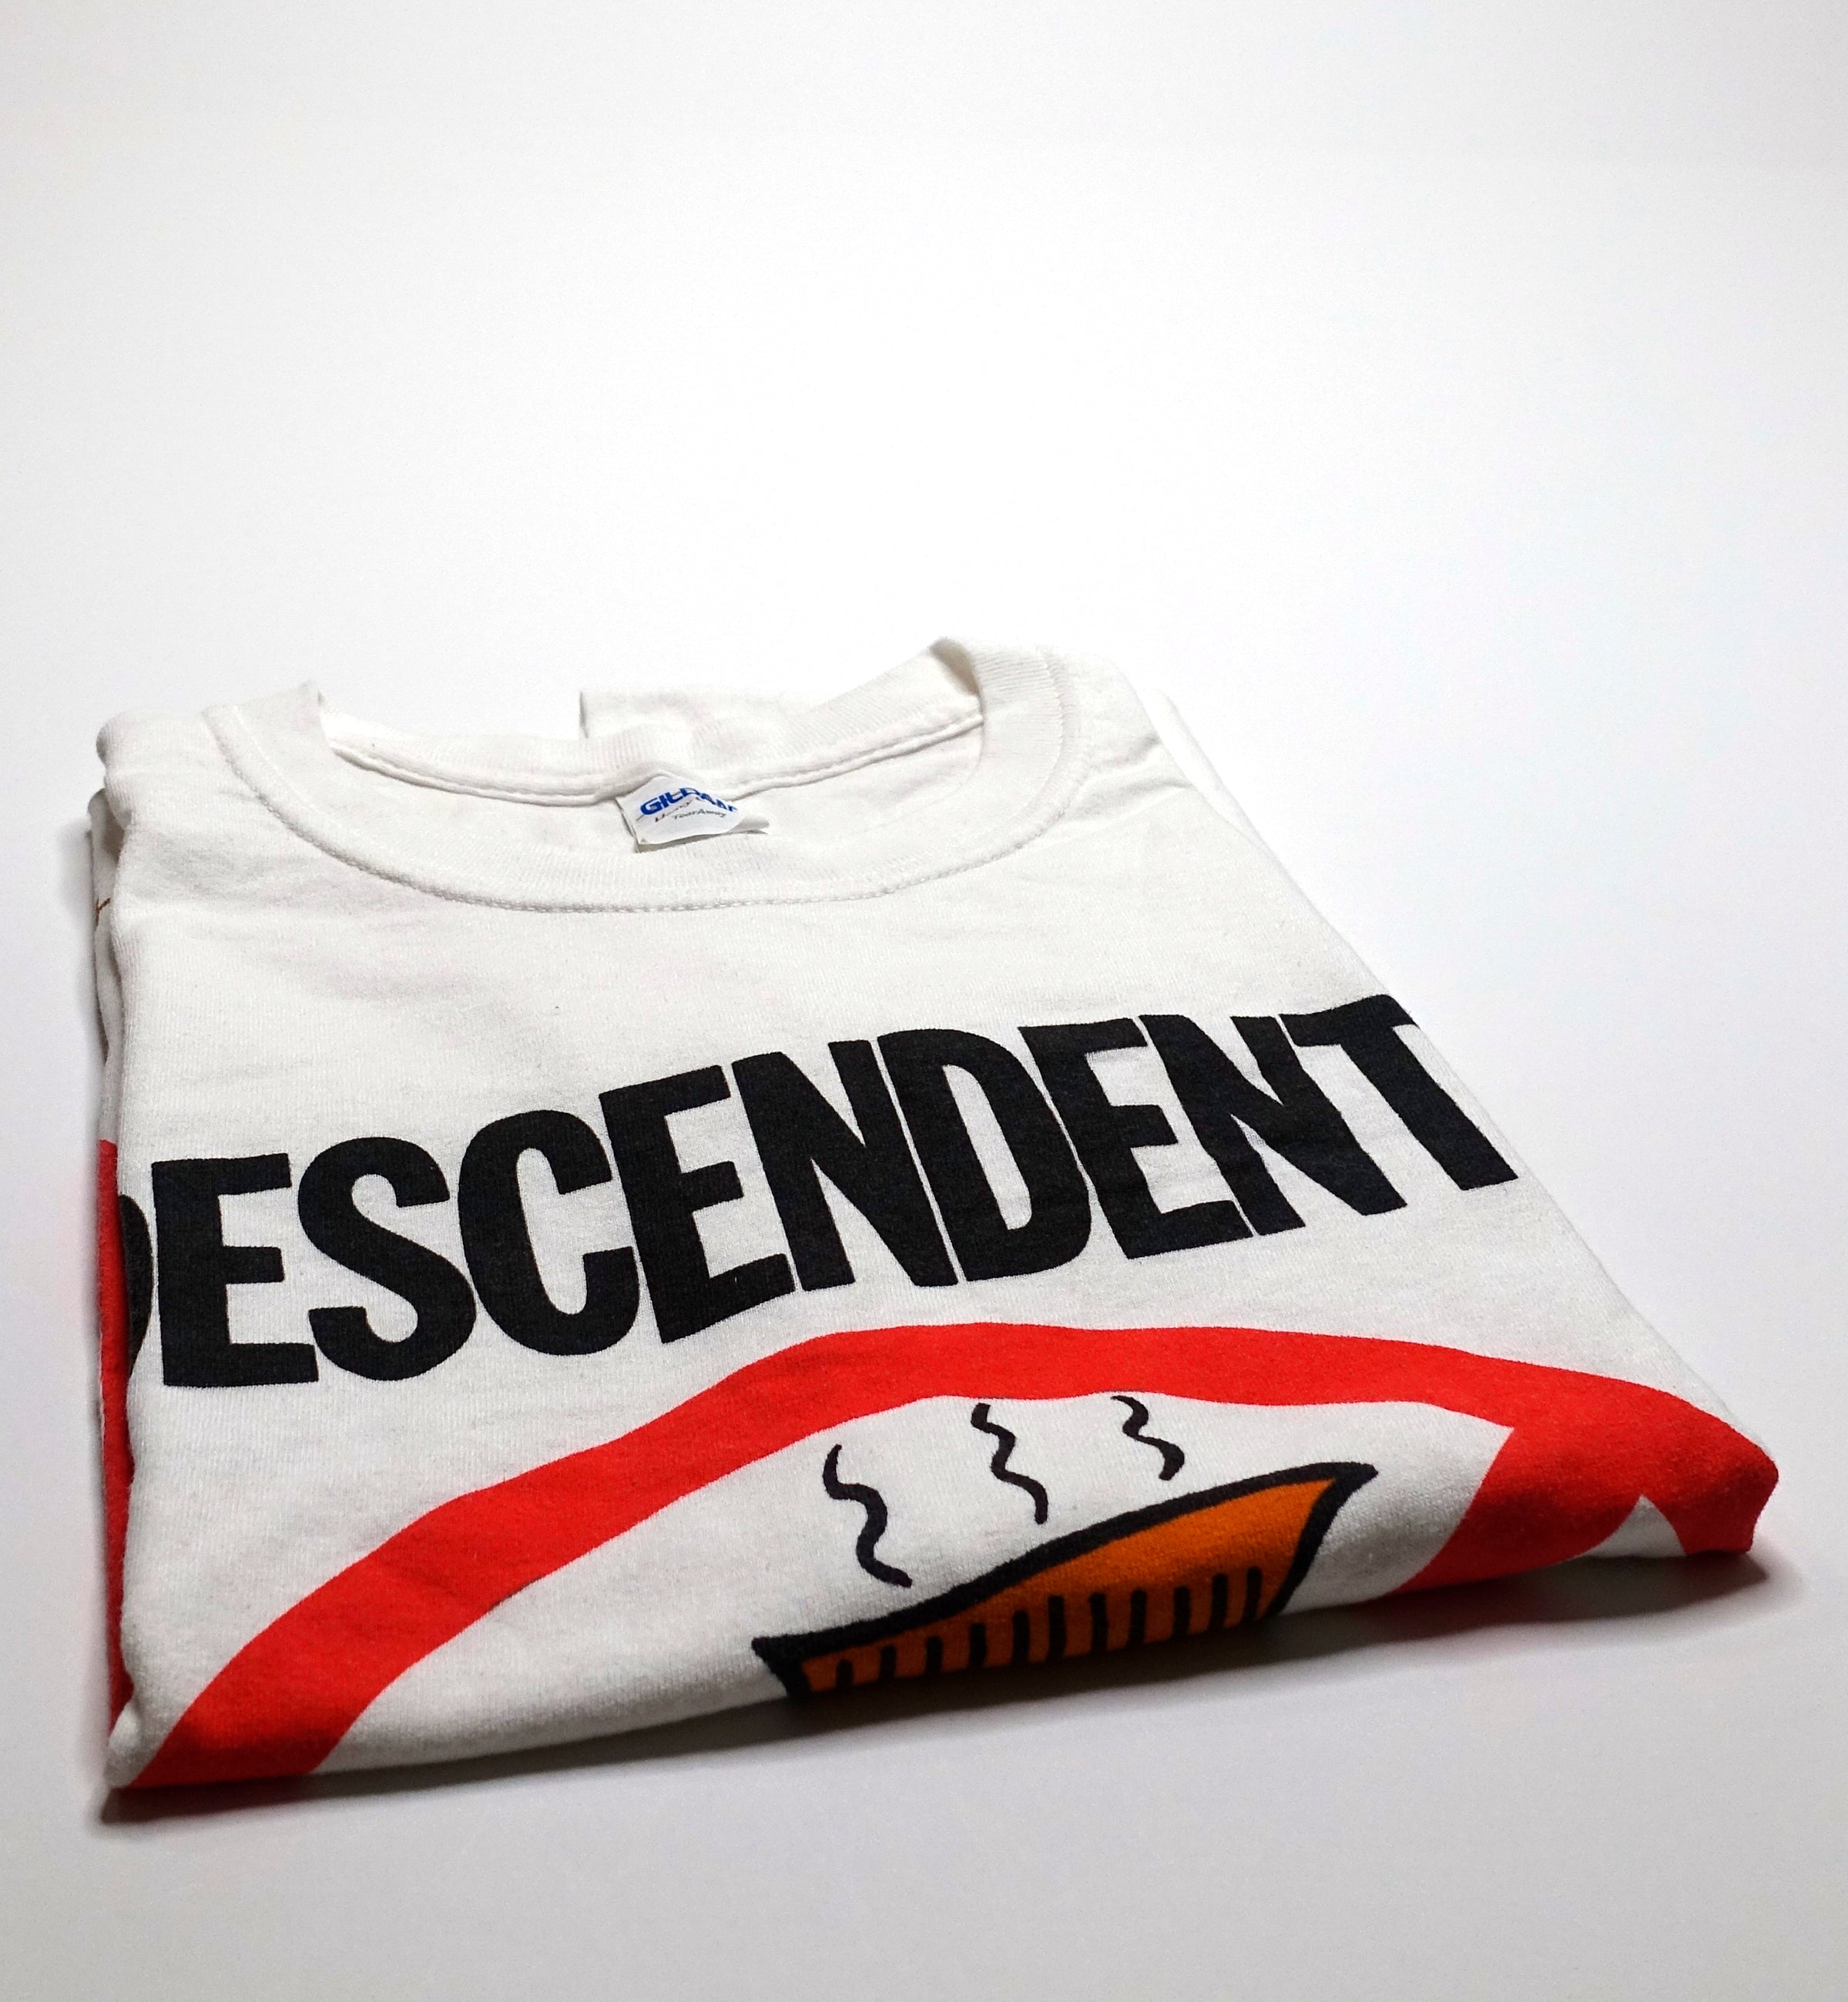 Descendents - Thou Shalt Not Partake Of Decaf Shirt Size Large